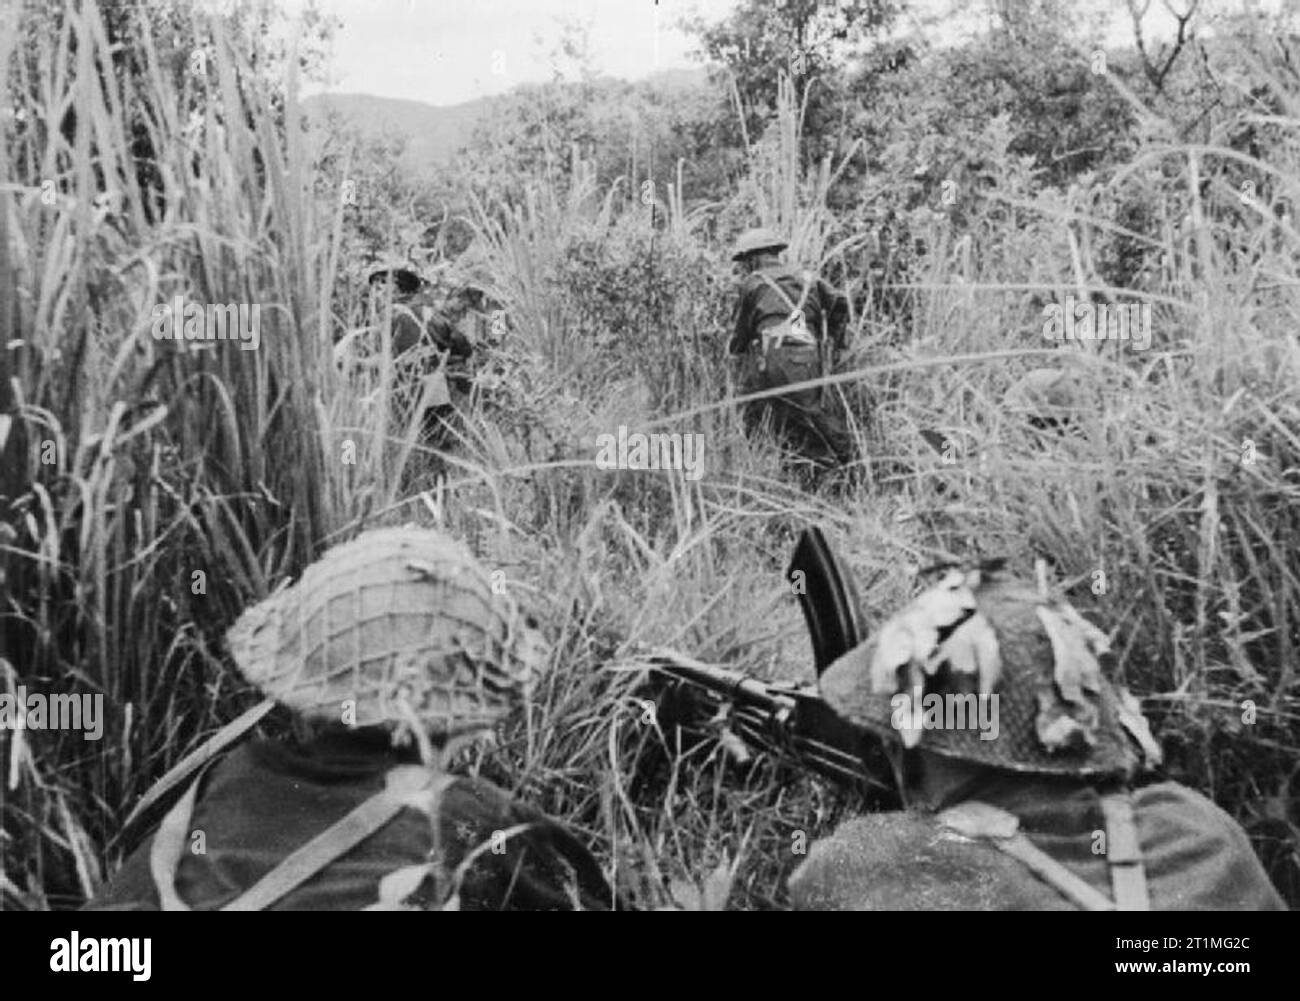 Der Krieg im Fernen Osten - der Burma Campaign 1941-1945 Die Schlacht von Imphal-Kohima März - Juli 1944: Britische Soldaten Suche durch lange Gras für japanischen Scharfschützen während von einem Bren gun Team abgedeckt. Stockfoto